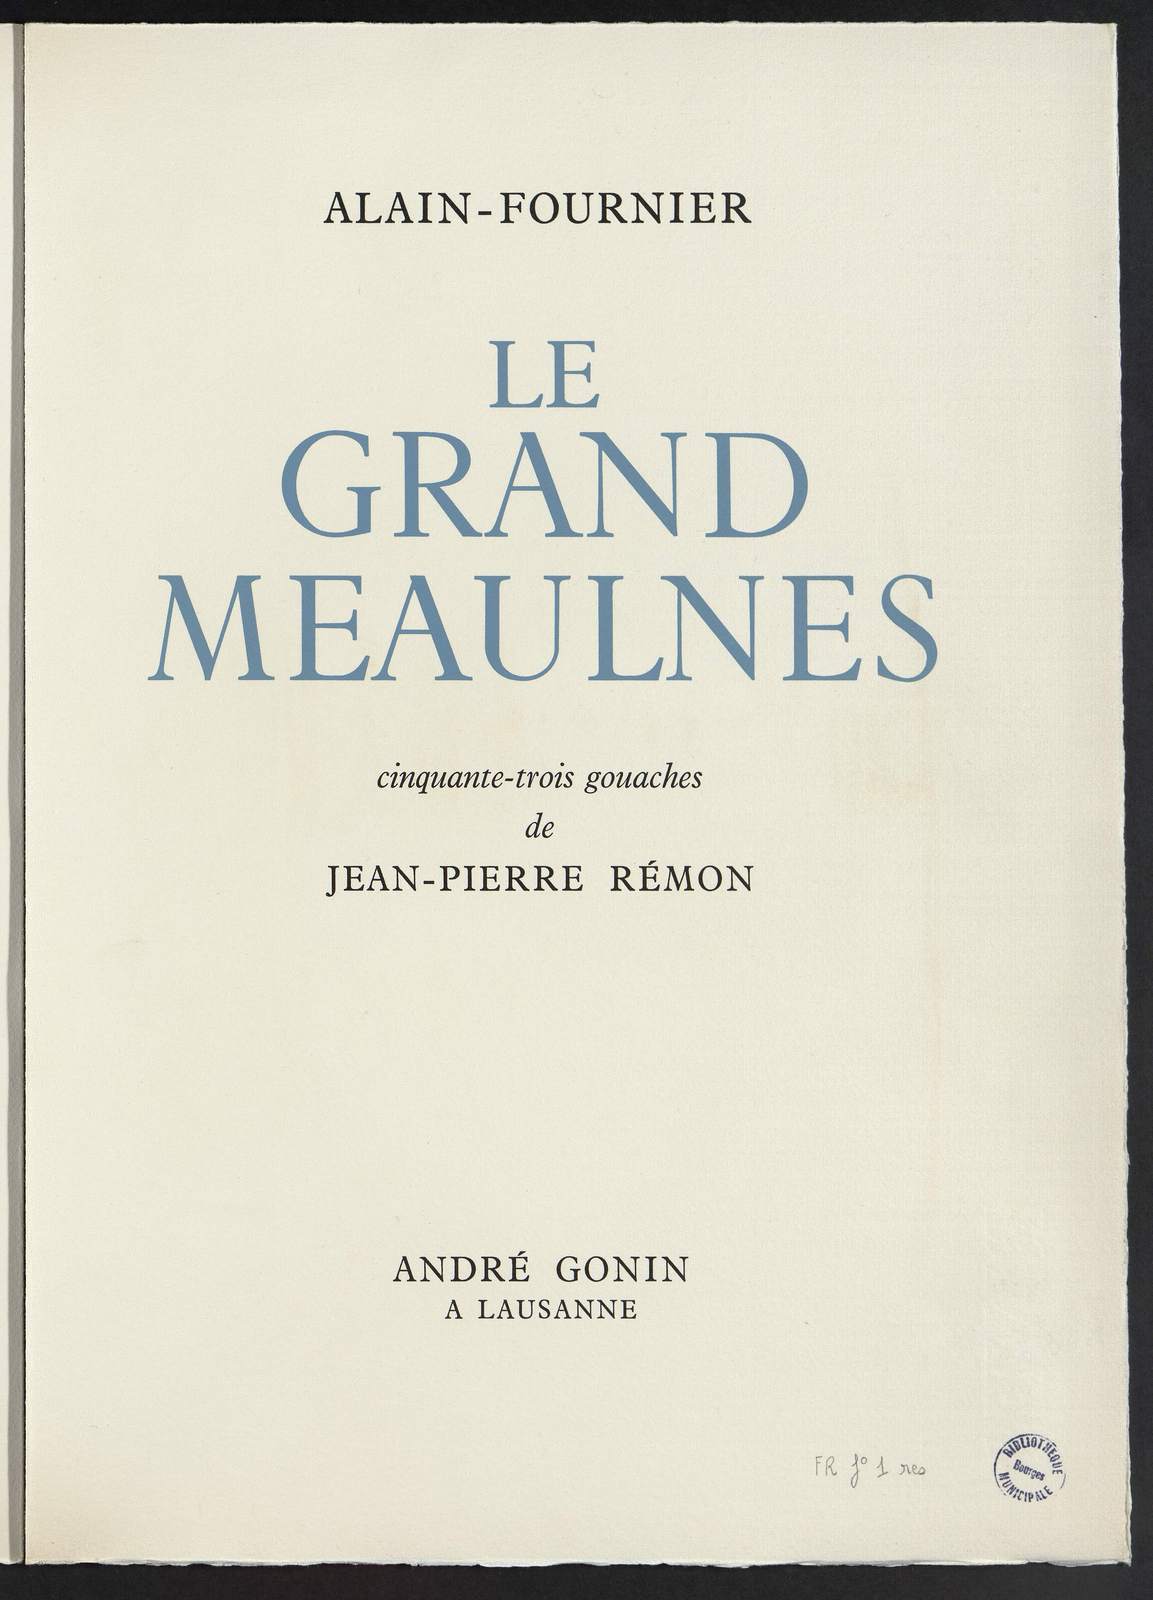 Le Grand Meaulnes, Une évasion, illustré par Jean-Pierre Rémon, André Gonnin, 1956